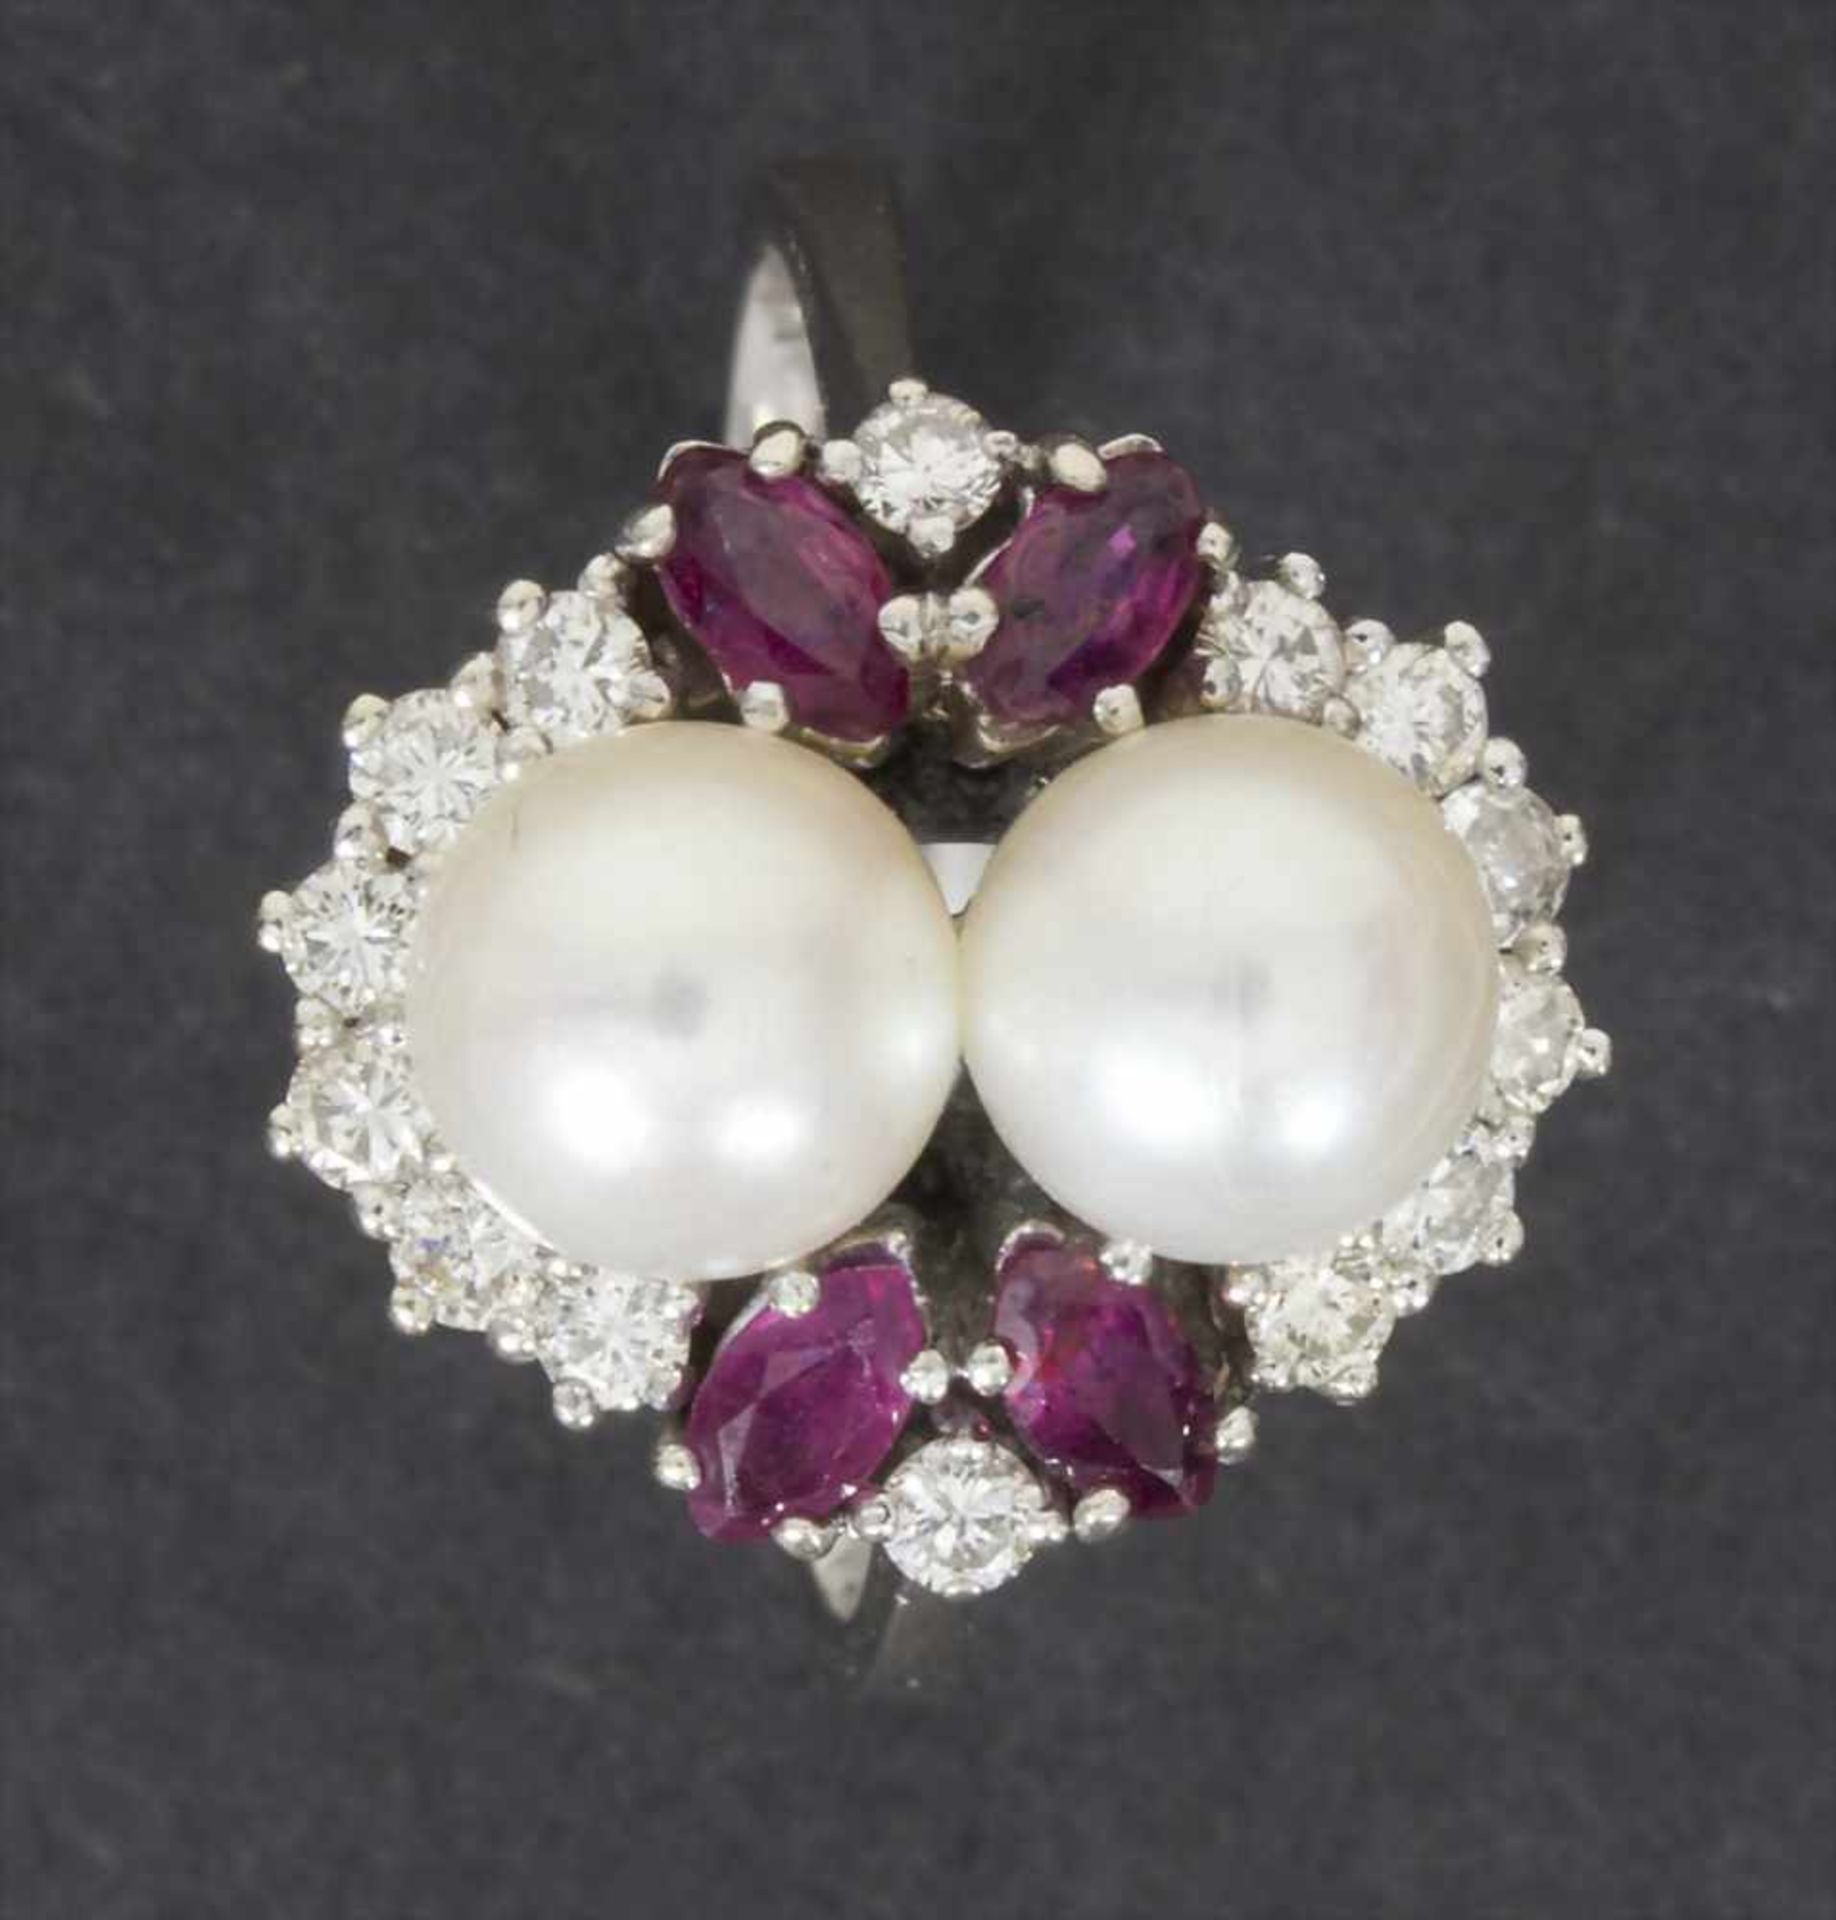 Damenring mit Brillanten, Perlen und Rubin / A ladies ring with brilliants, pearls and